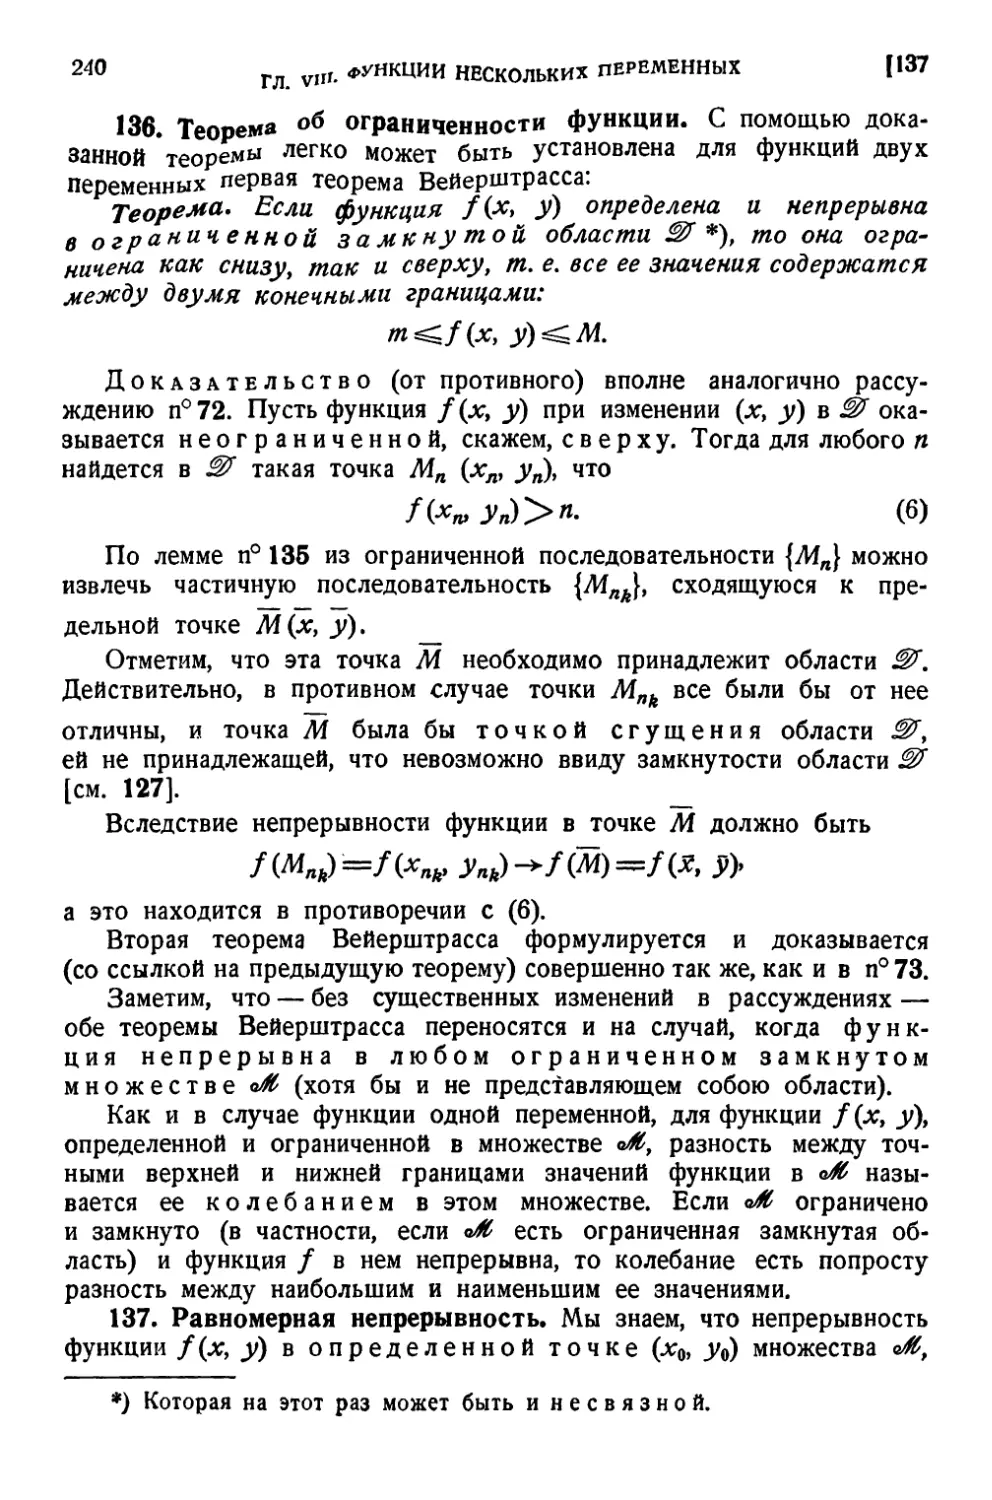 136. Теорема об ограниченности функции
137. Равномерная непрерывность